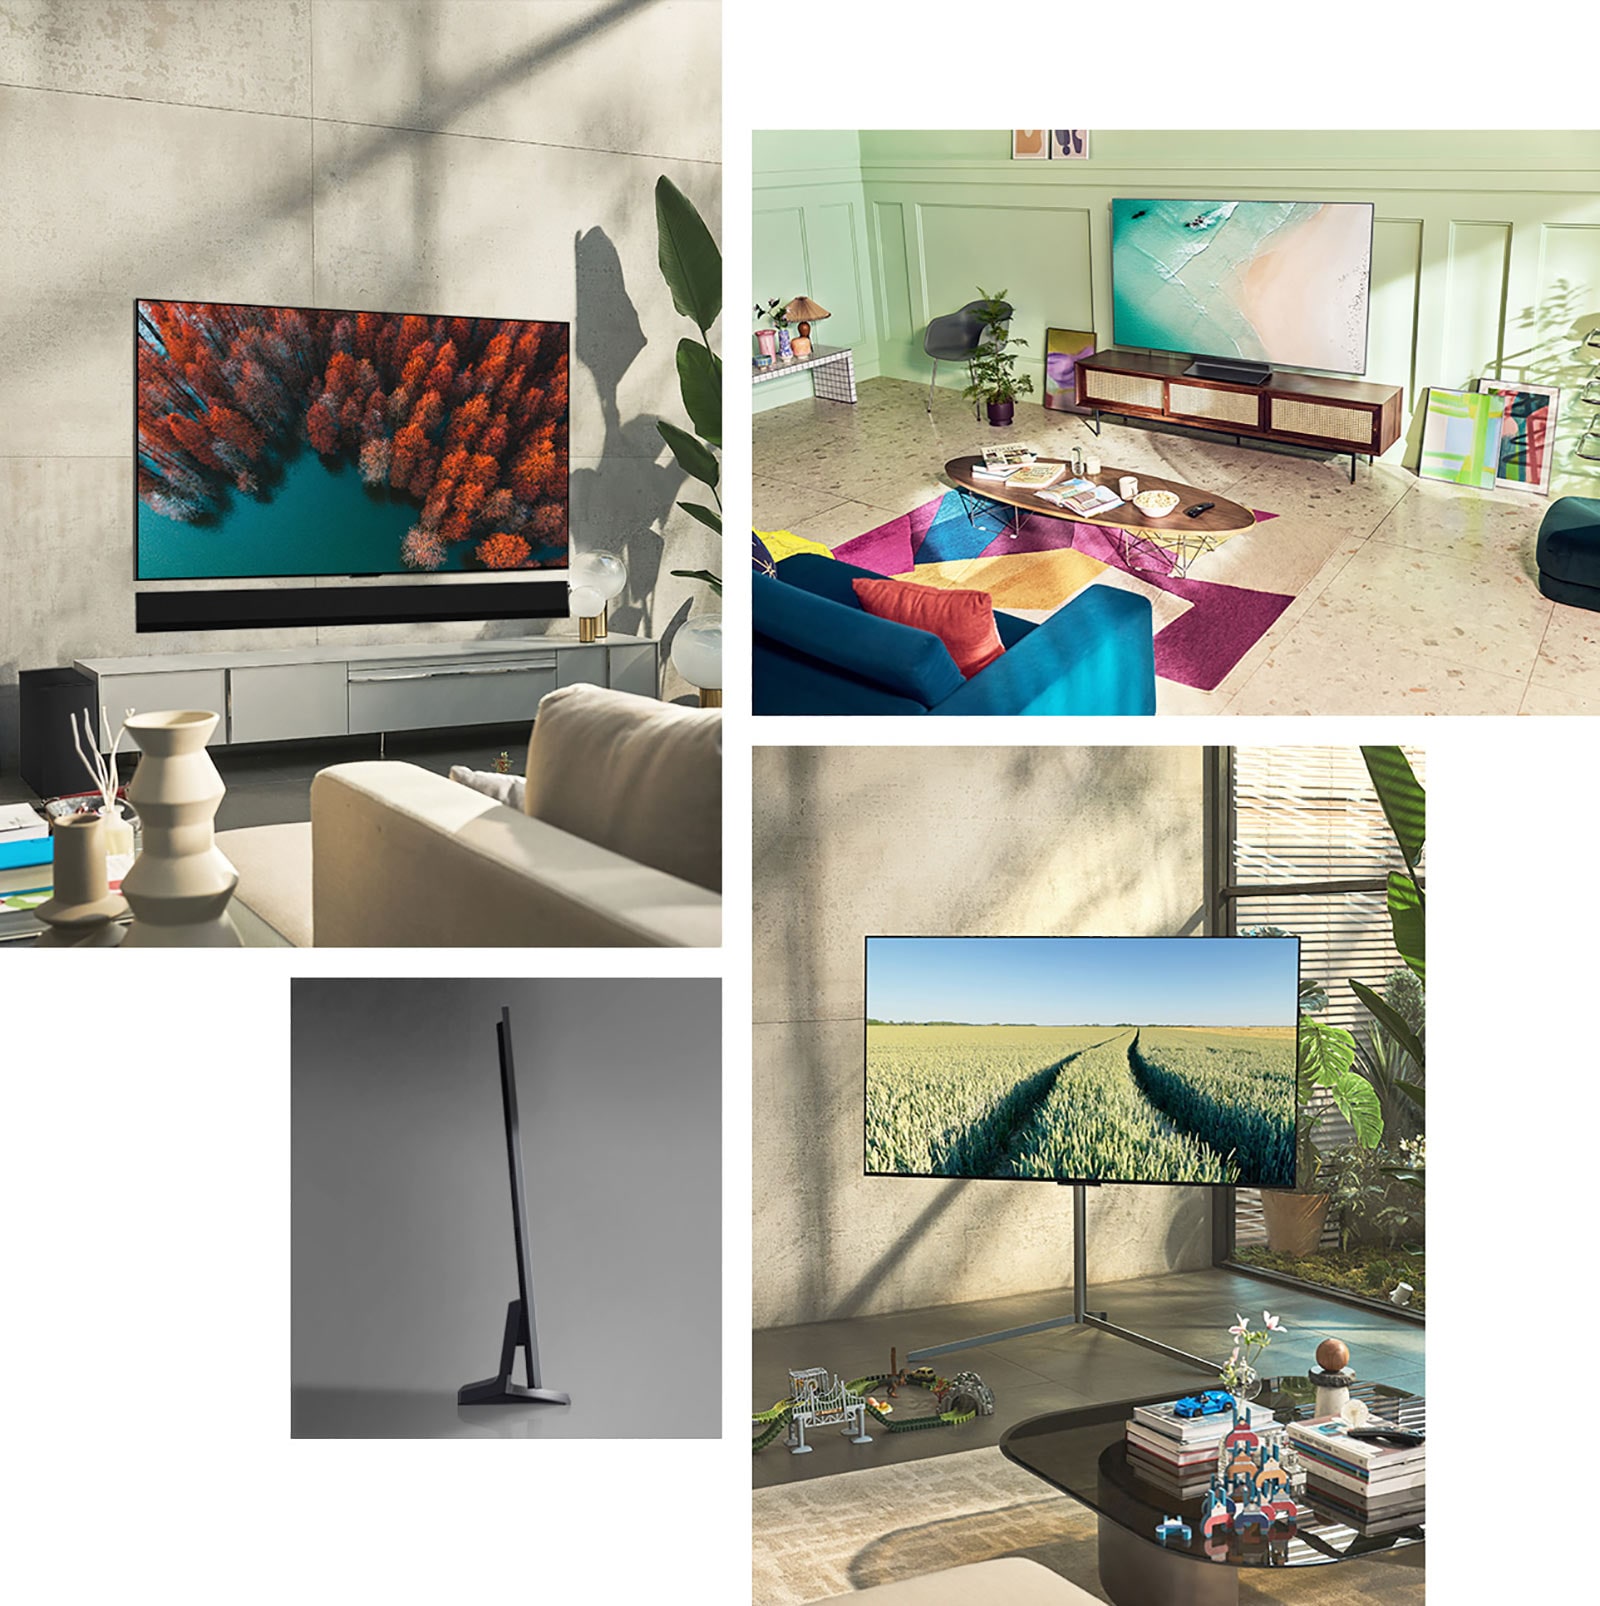 Một chiếc LG OLED G2 được treo trên tường trong phòng khách với cây cối, một chồng sách và một chiếc tủ phong cách cổ điển. Một chiếc LG OLED G2 được treo trên tường trong một căn phòng trang trí tối giản bên cạnh một kệ bày đồ trang trí đơn sắc. Hình ảnh cạnh bên siêu mỏng của LG OLED G2. Một chiếc LG OLED G2 được treo trên tường phòng khách đầy màu sắc với hành tinh khô, bộ khuếch tán và bình hoa. Hình ảnh cận cảnh cạnh của một chiếc LG OLED G2 siêu mỏng. 